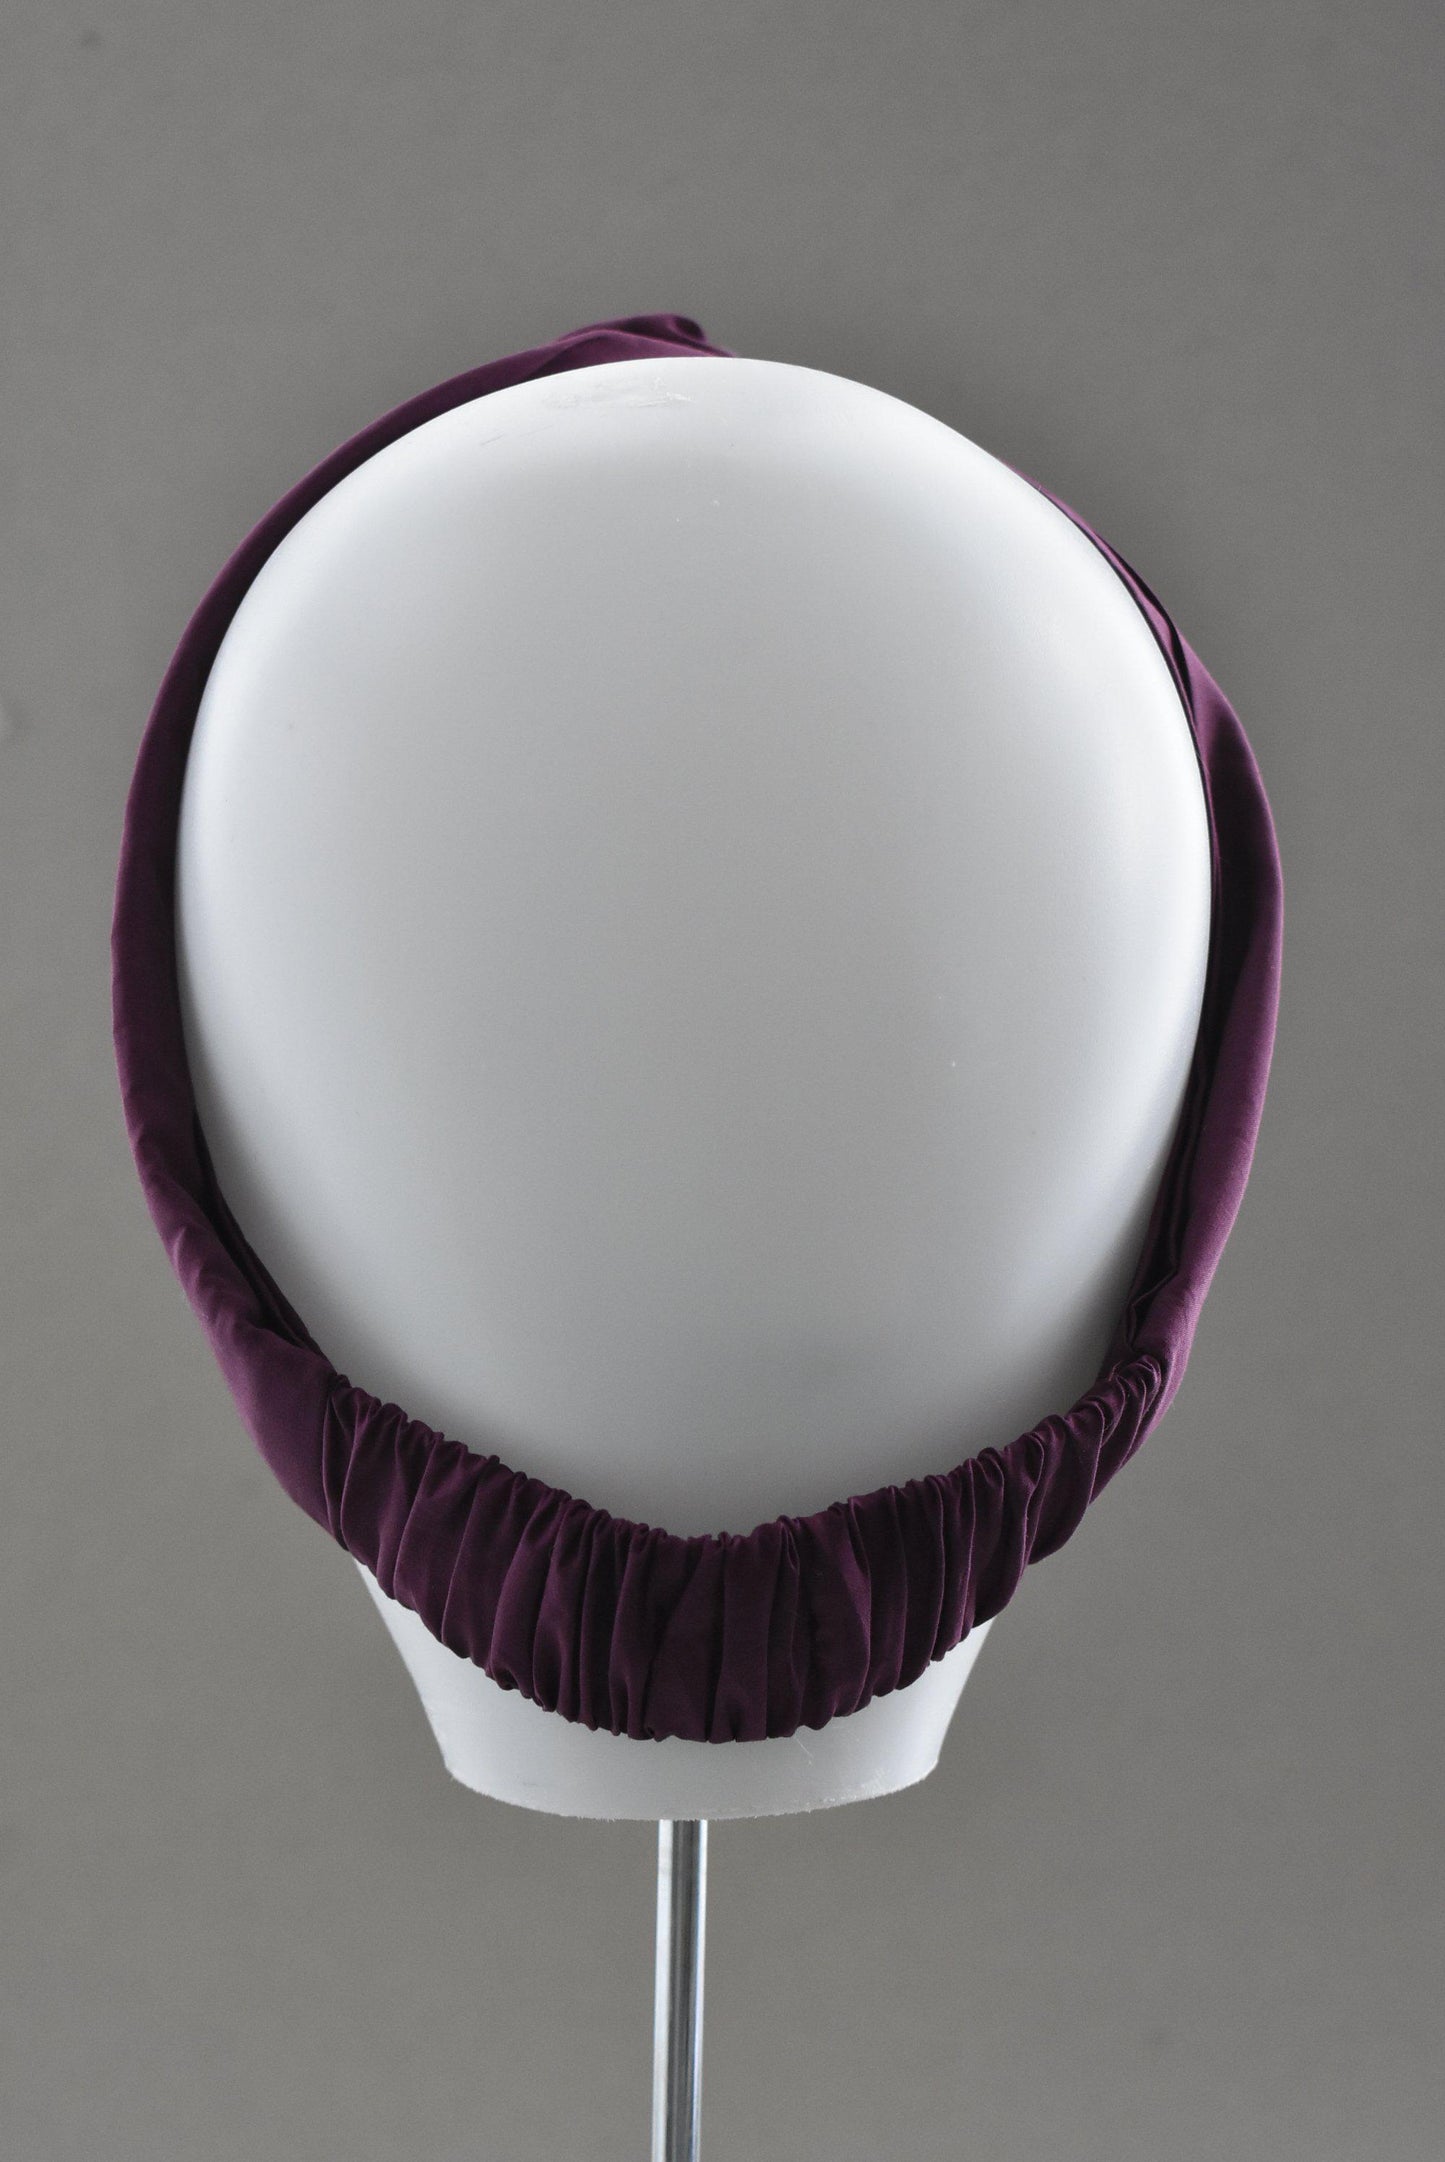 Ladies Twisted Turban Headband - Liberty of London Aubergine Purple